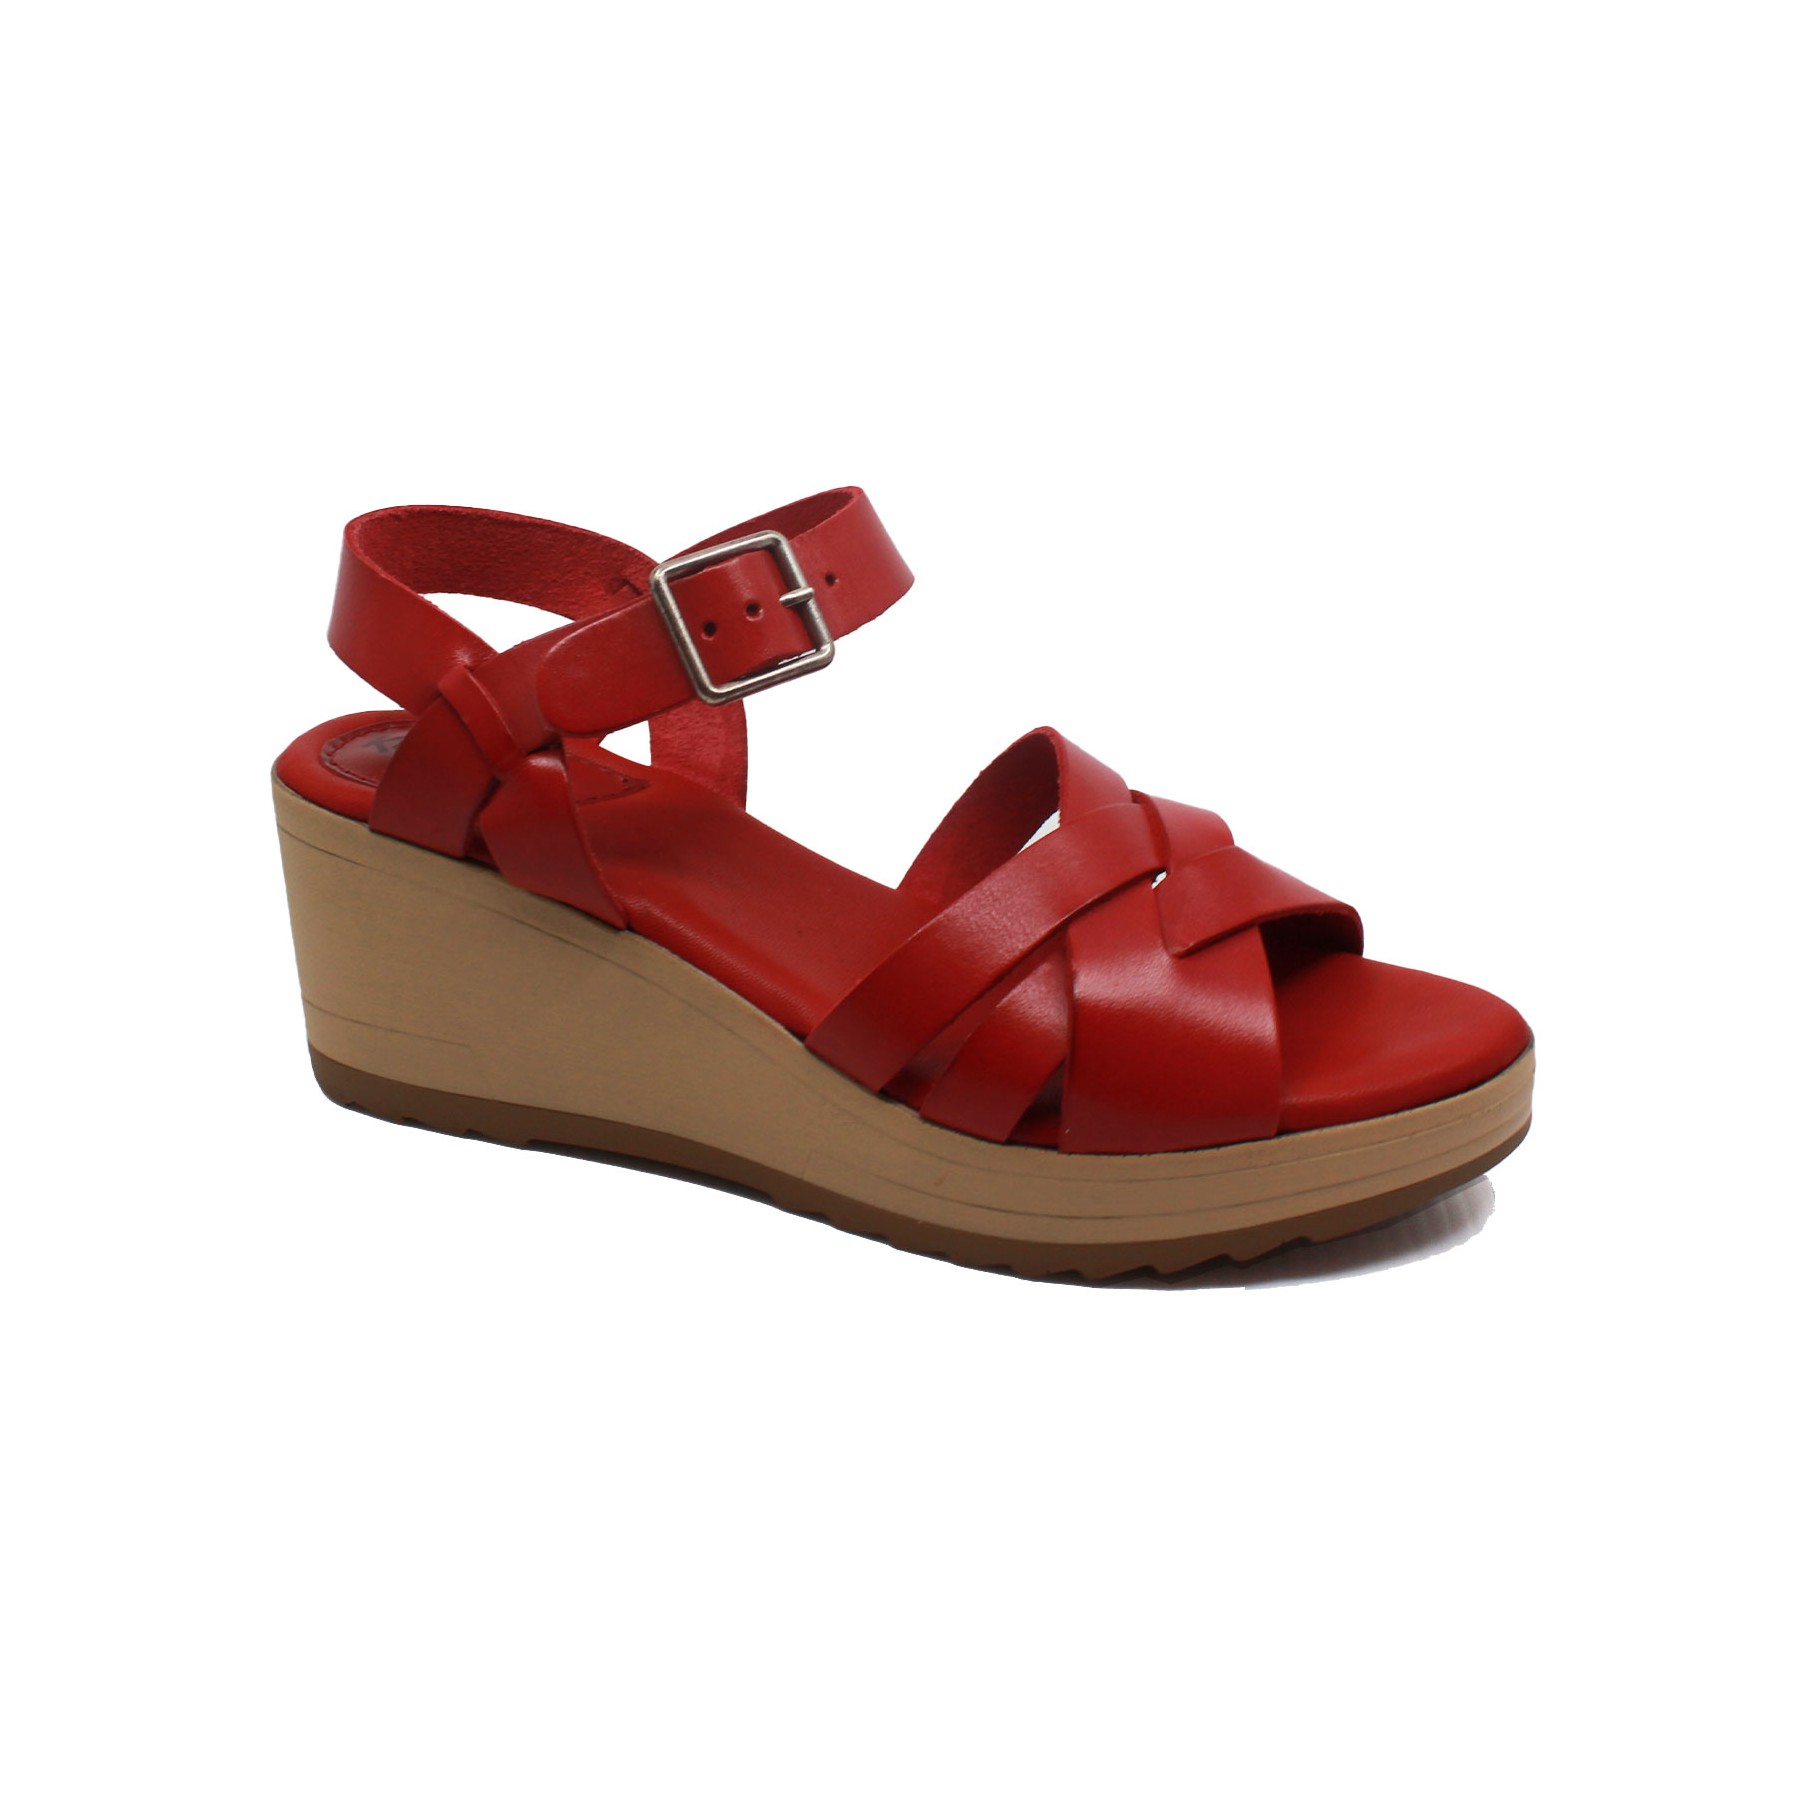 Sandales 775711-50 SOLYNA Kickers en coloris Rouge Femme Chaussures Chaussures à talons Sandales compensées 